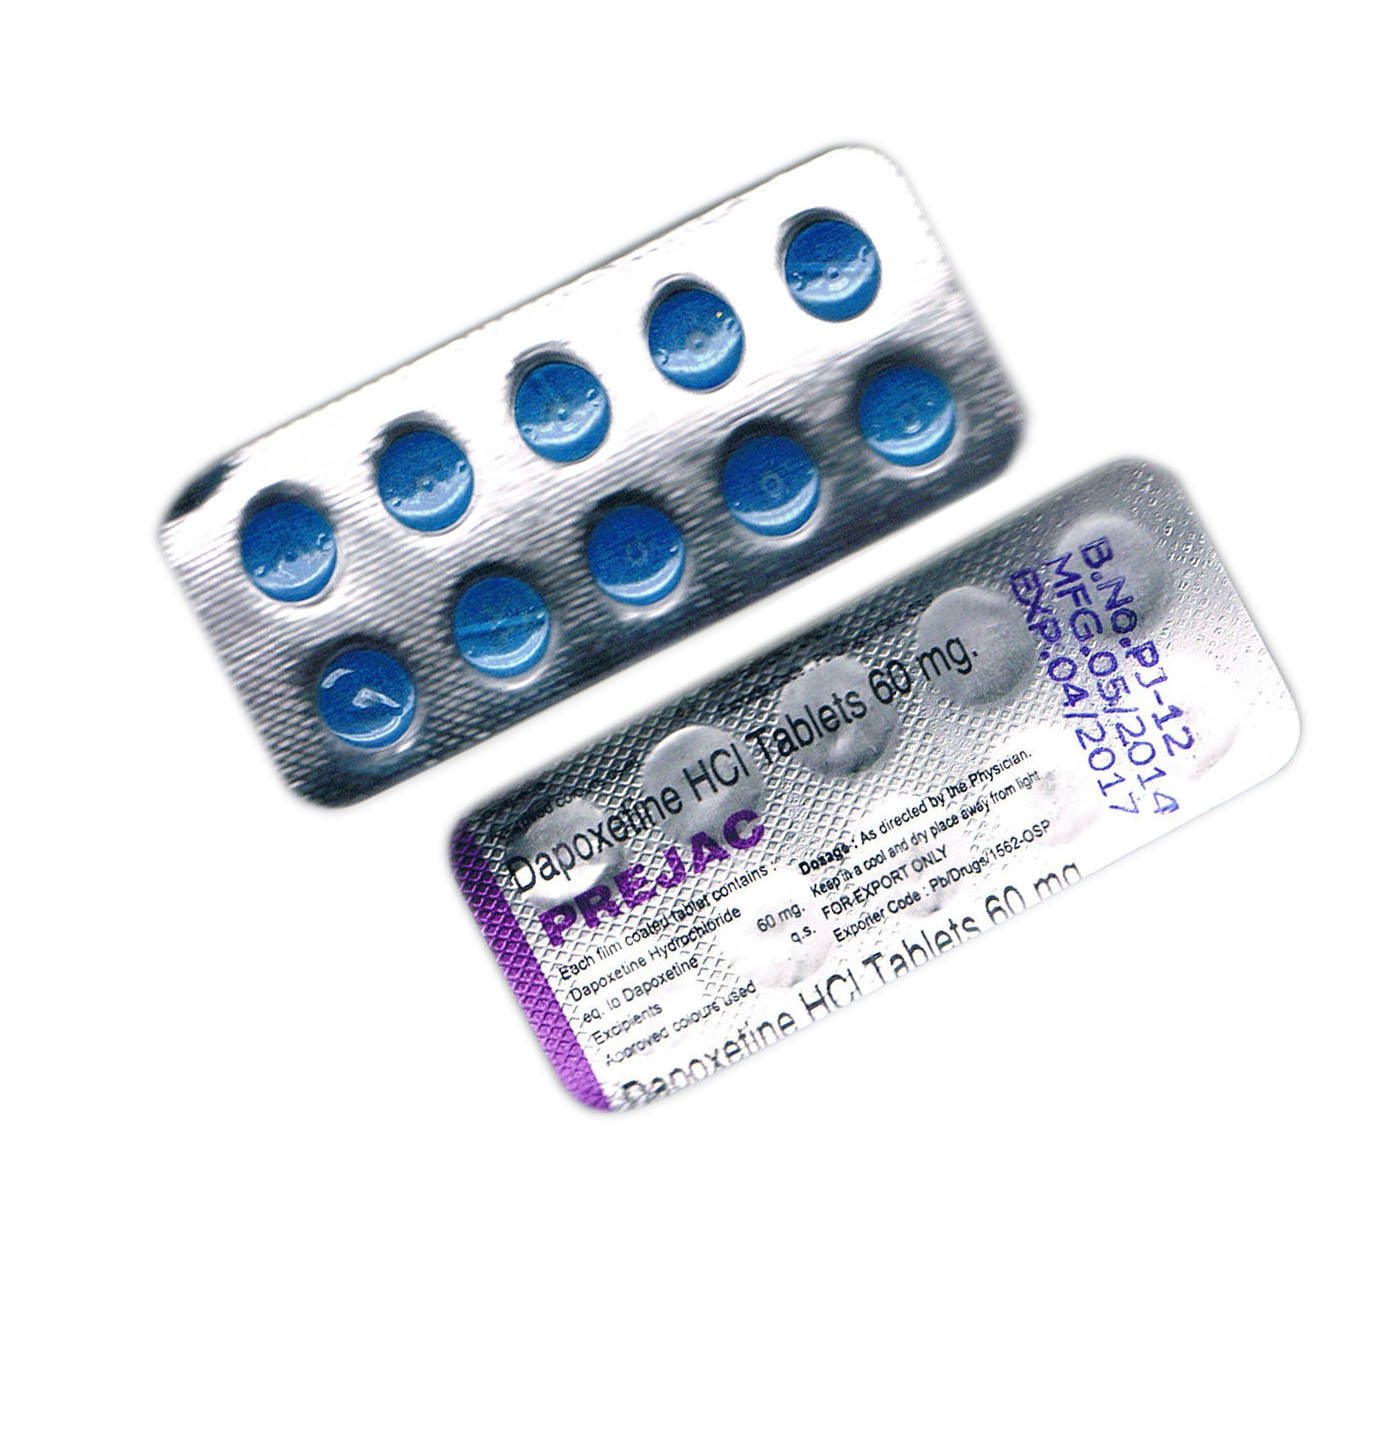 Препараты для повышения потенции без побочных эффектов. Дапоксетин Poxet-90 dapoxetine 90 MG 1 Tab. Таблетки для потенции. Таблетки для повышения потенции. Мужские таблетки.